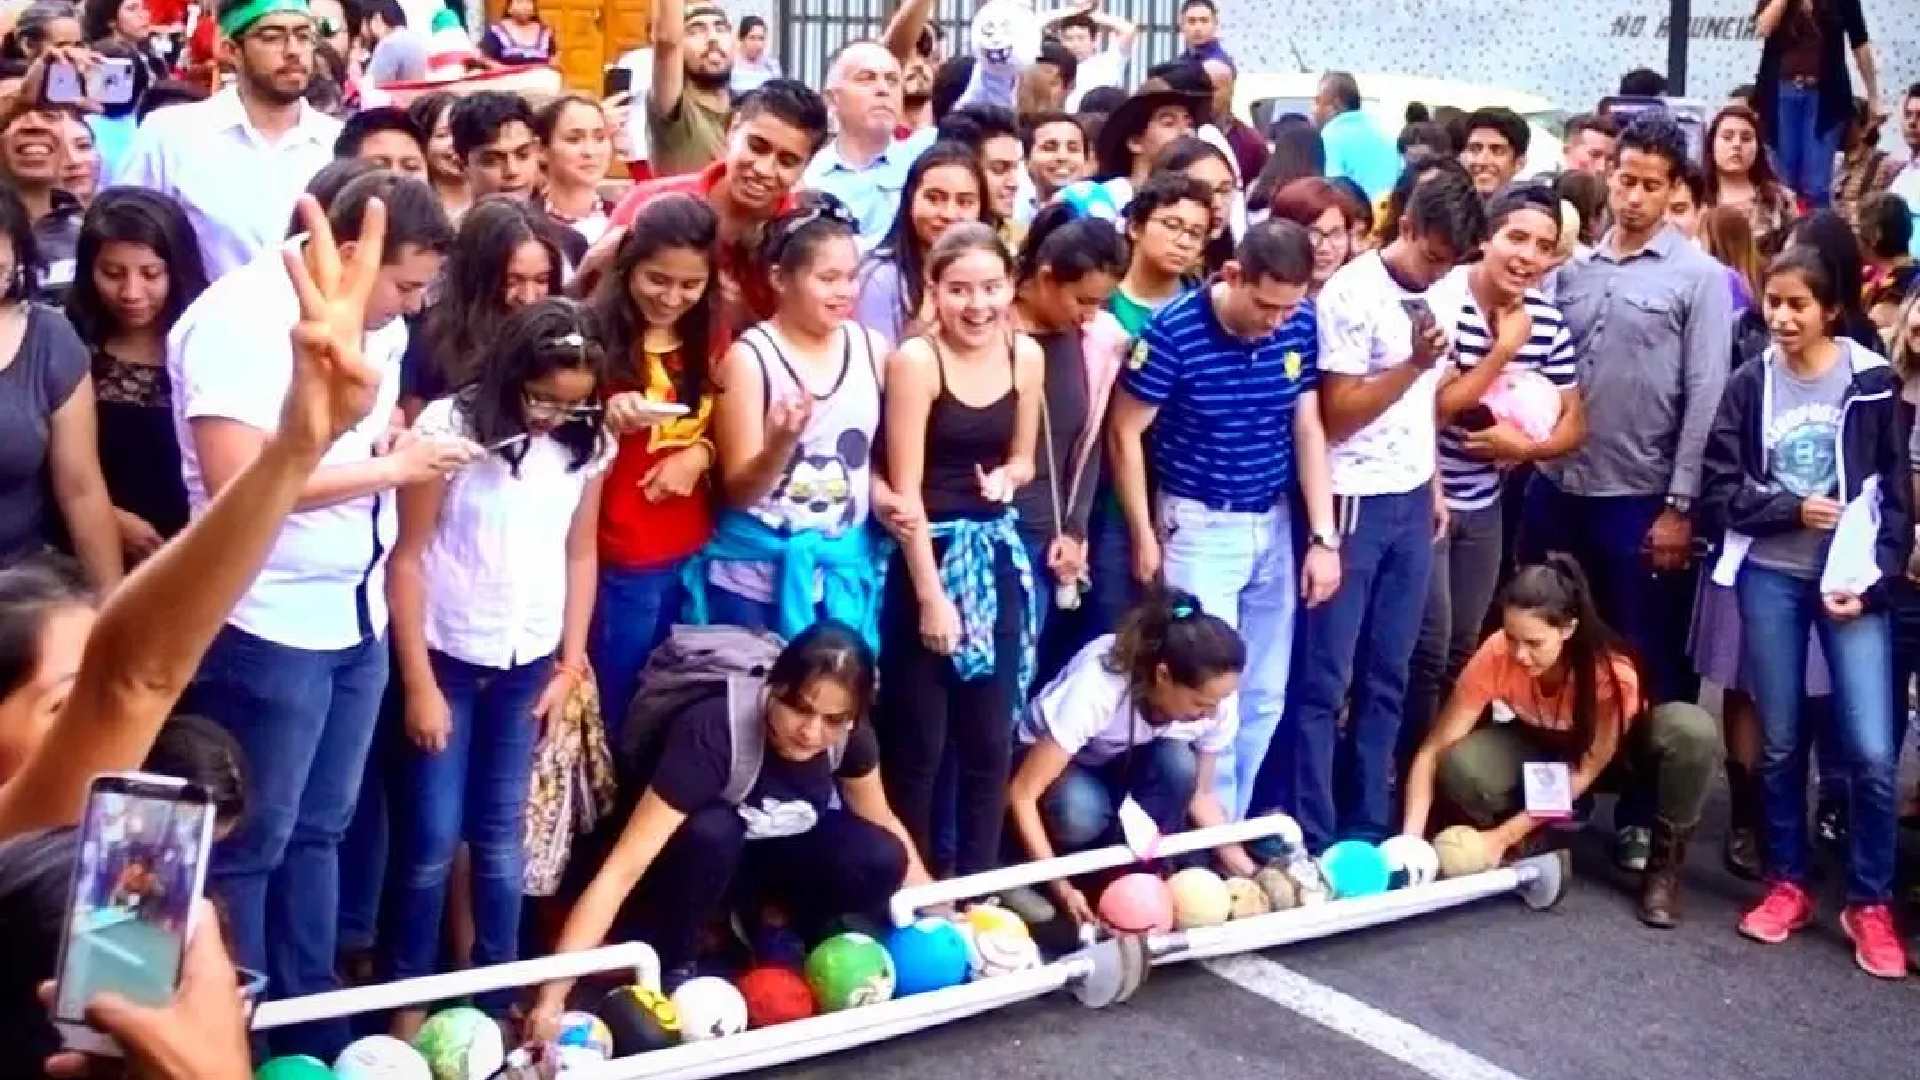 Tradicional carrera de melones en Xalapa ¿La conocías? Tienes que ver las imágenes